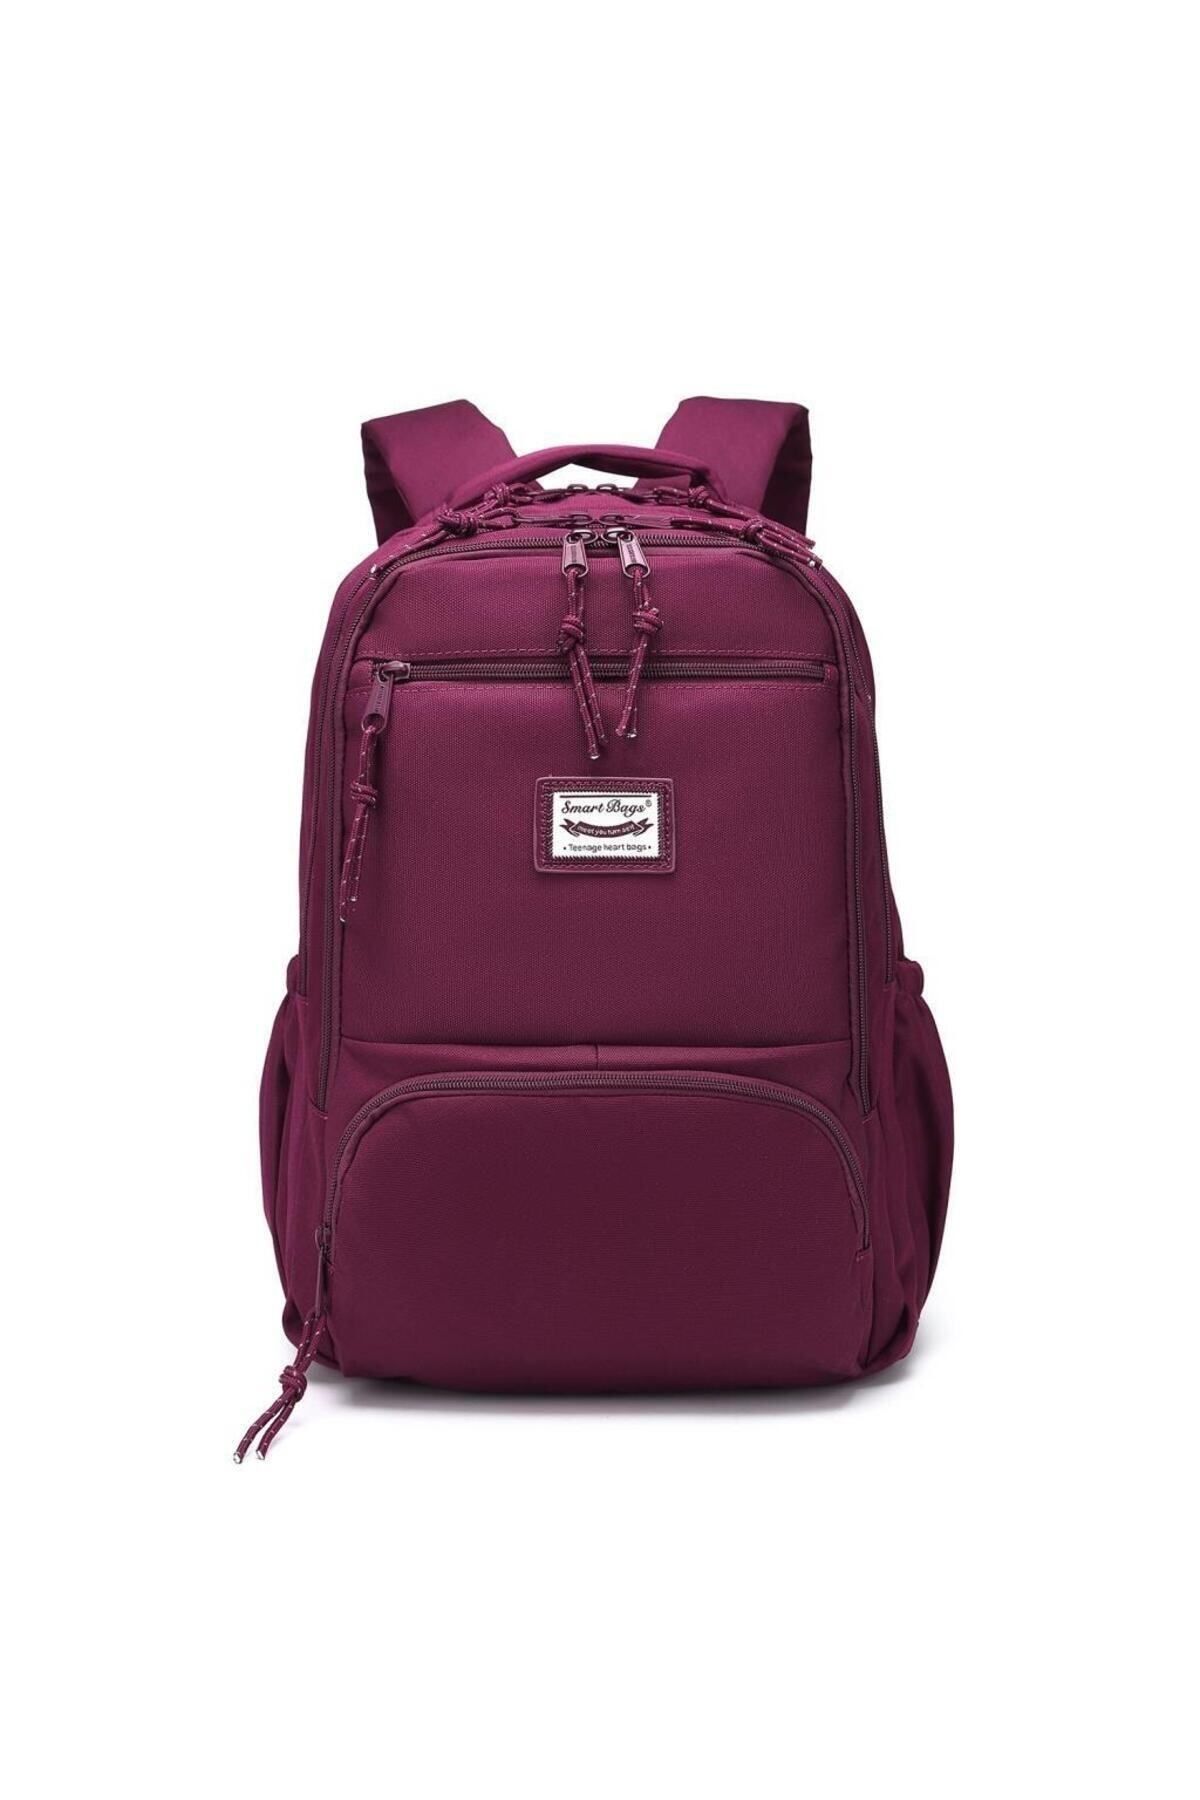 Smart Bags Sırt Çantası Okul Boyu Laptop Gözlü 3196